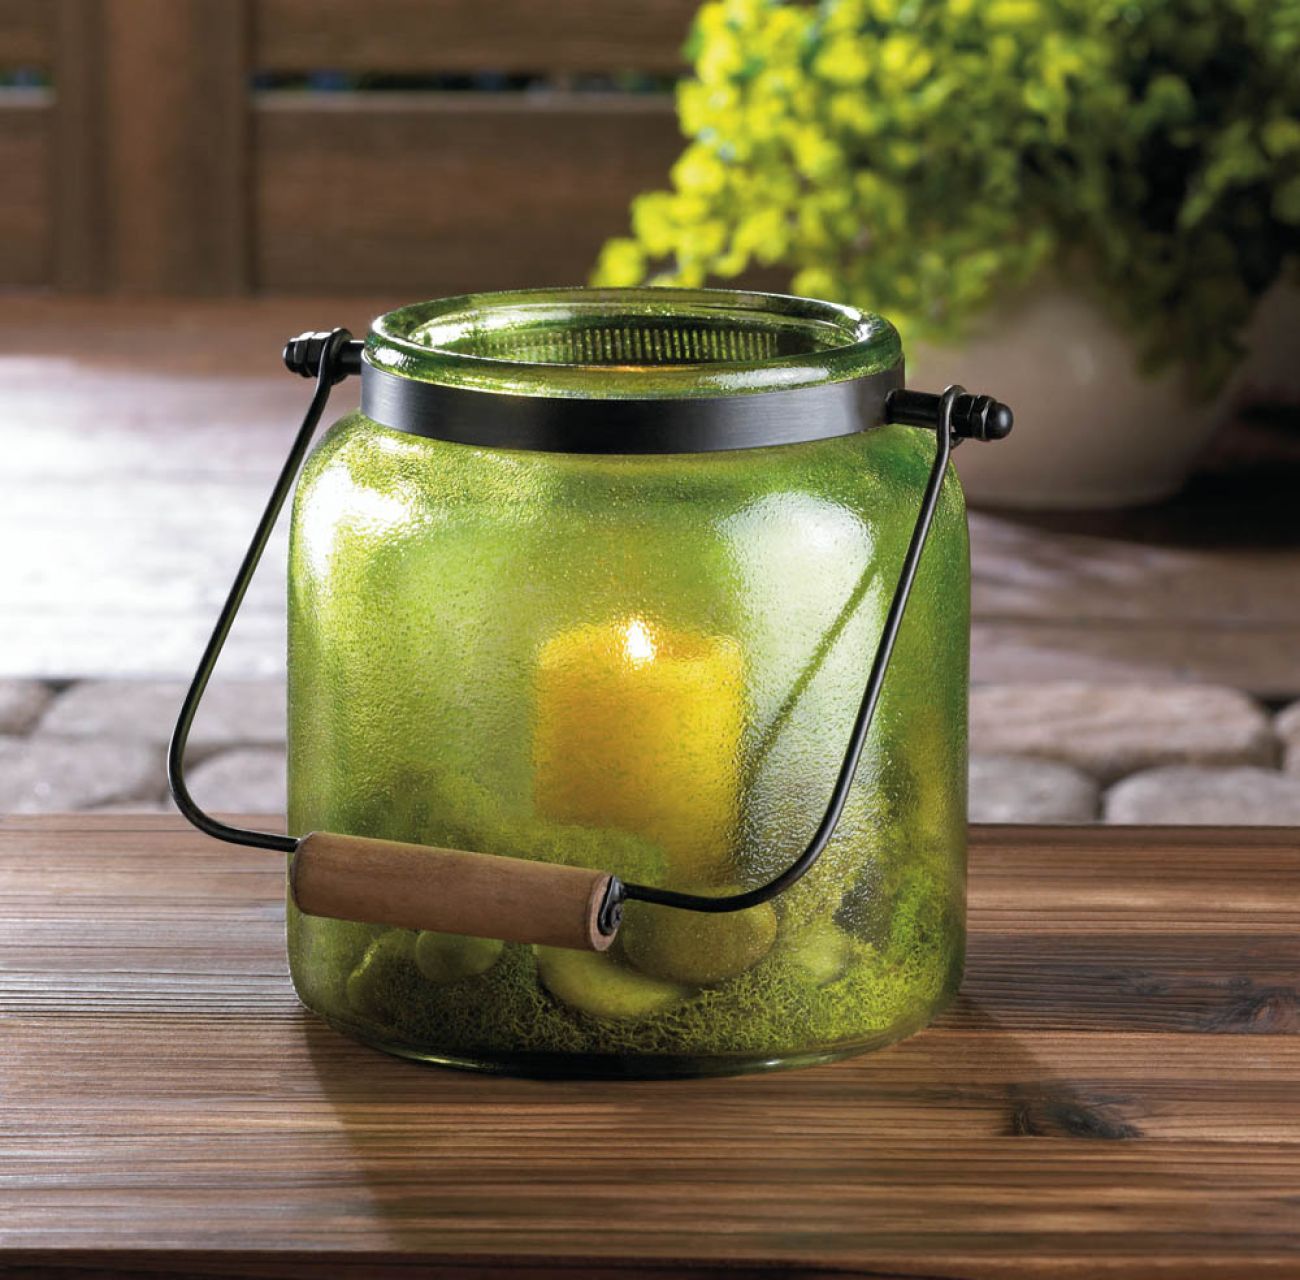 Green Jar Candle Lantern